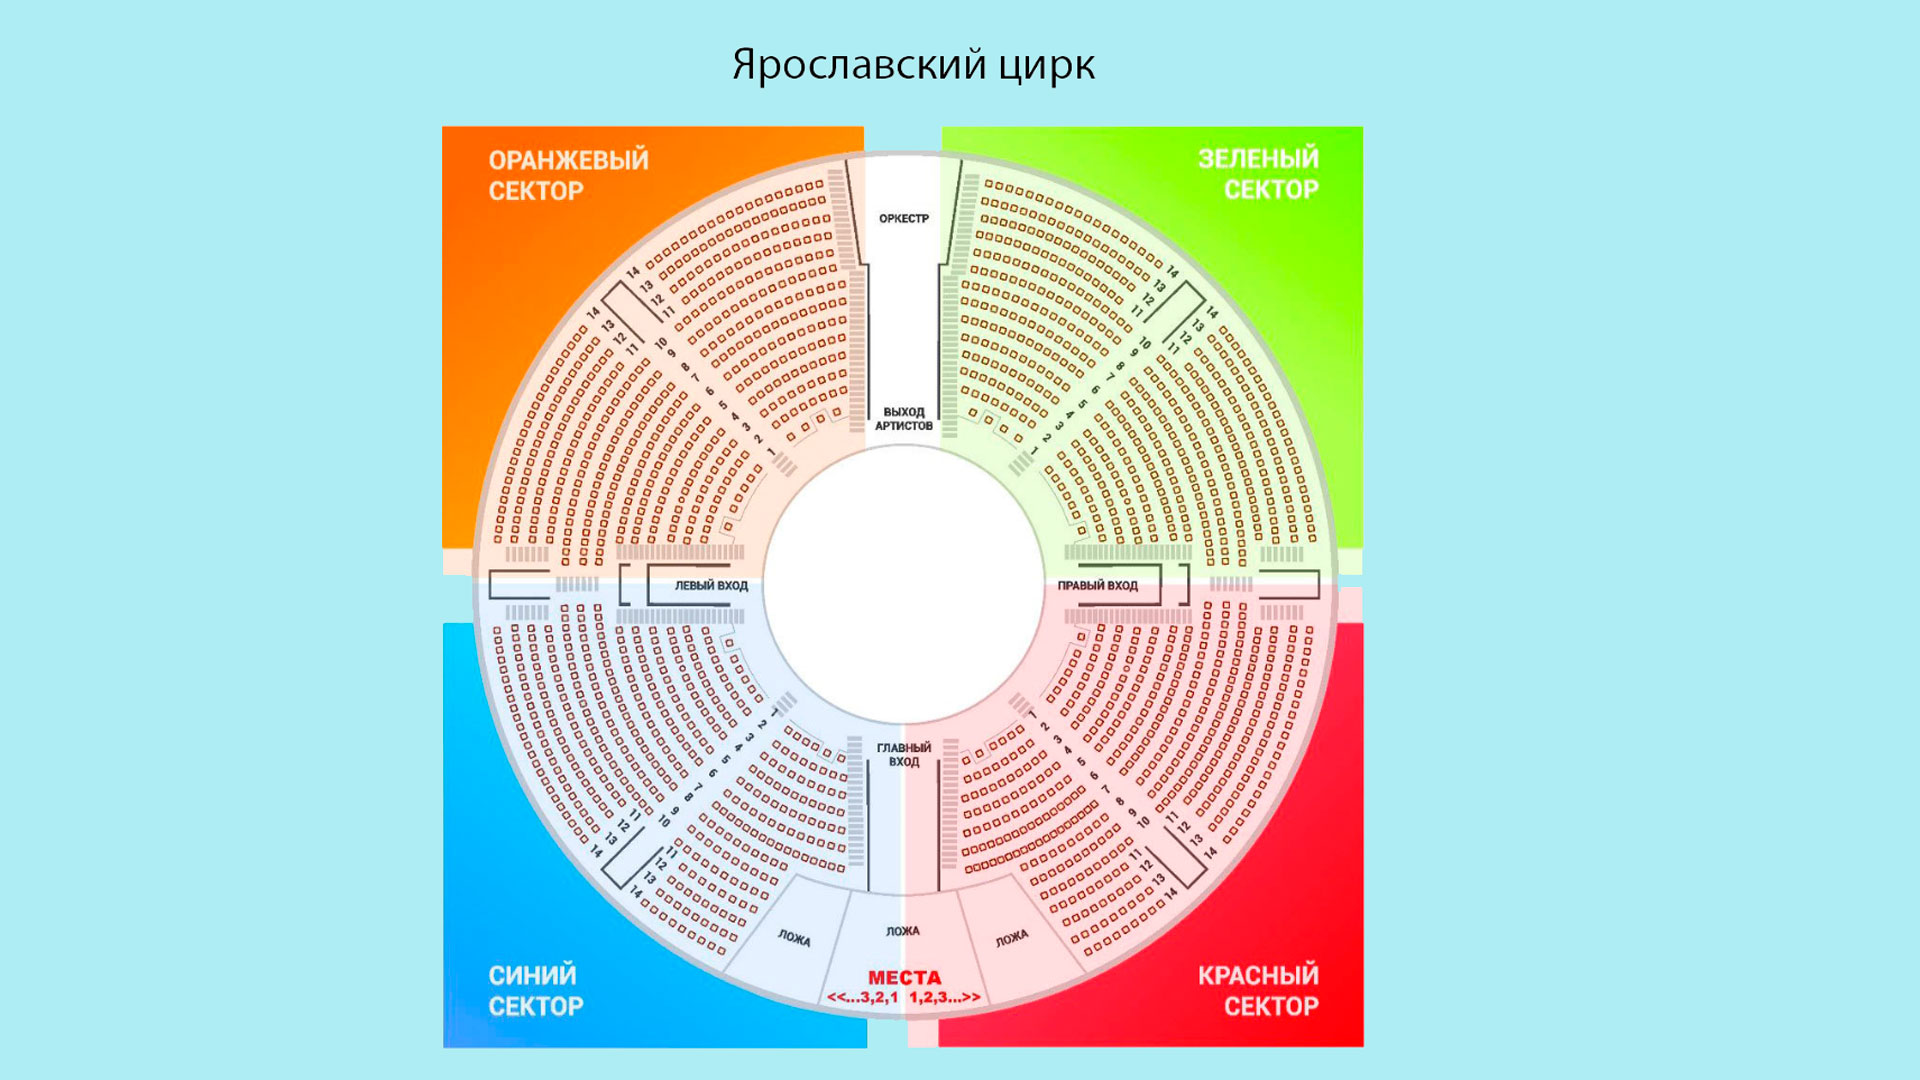 Цирк Ярославль: схема амфитеатра, разделённая на сектора по цвету.